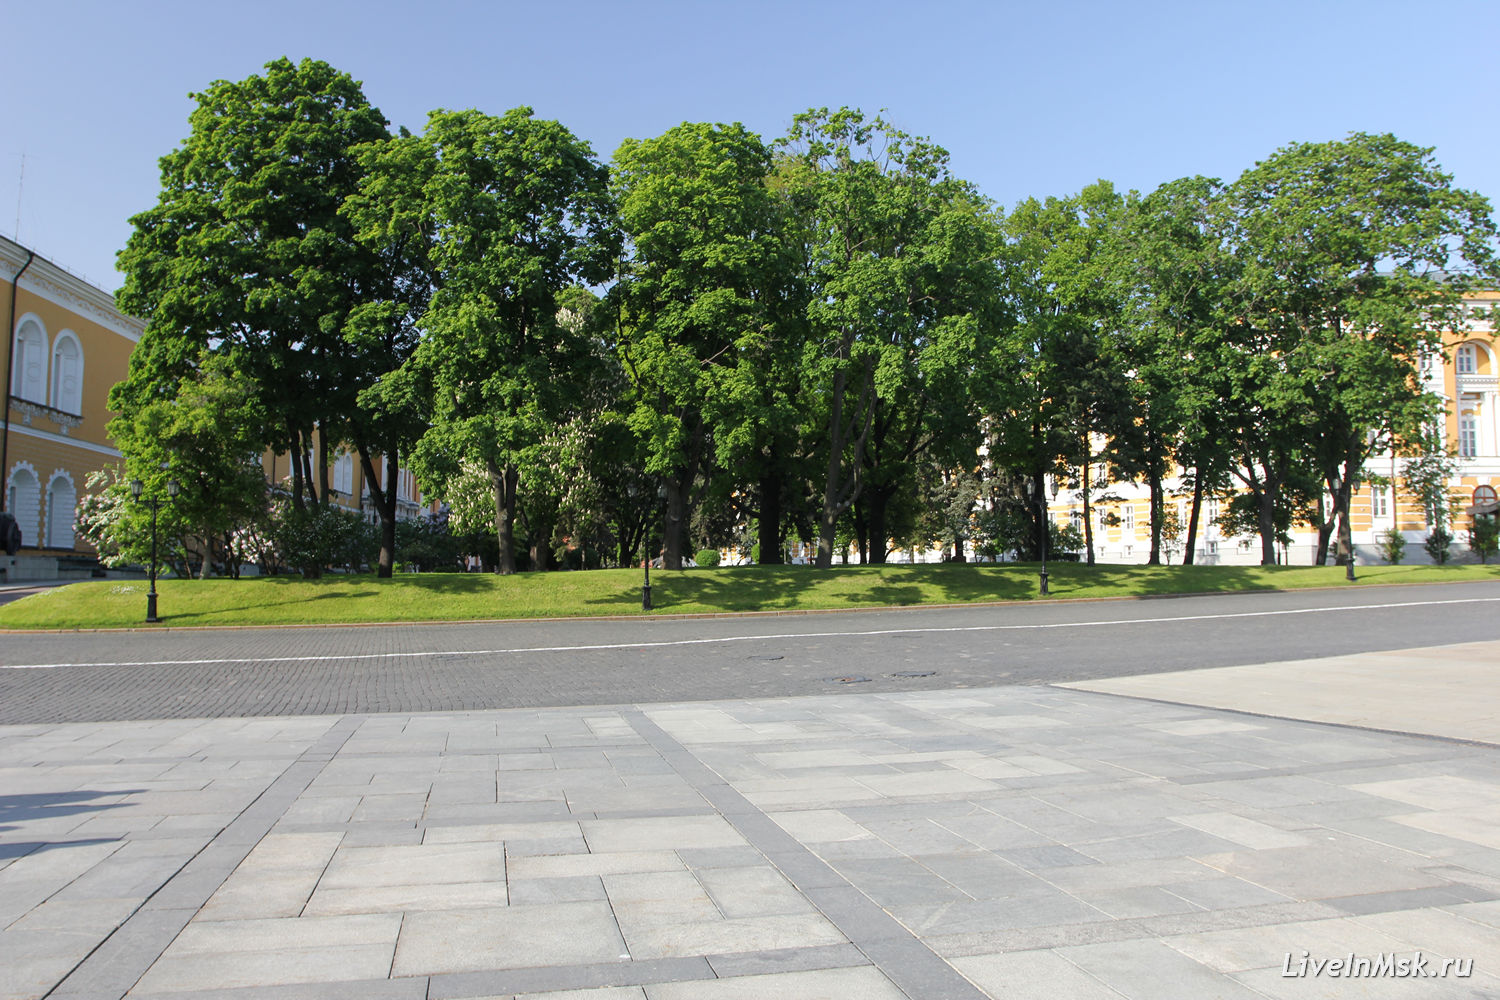 Сенатская площадь, фото 2015 года